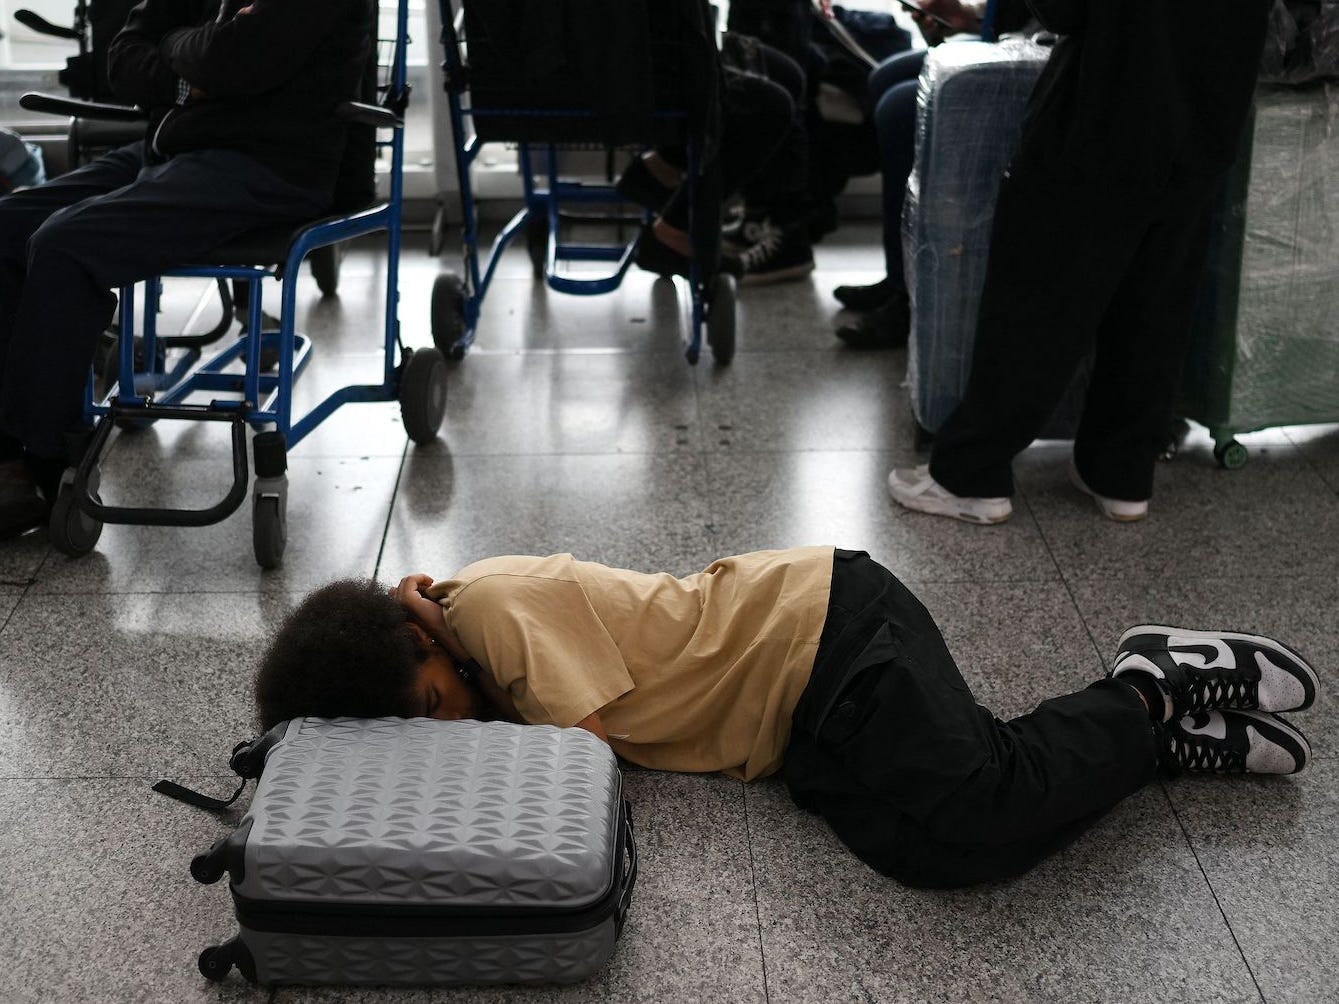 Ein Passagier schläft am Flughafen Stansted neben seinem Gepäck auf dem Boden, während andere Passagiere im Hintergrund sitzen.